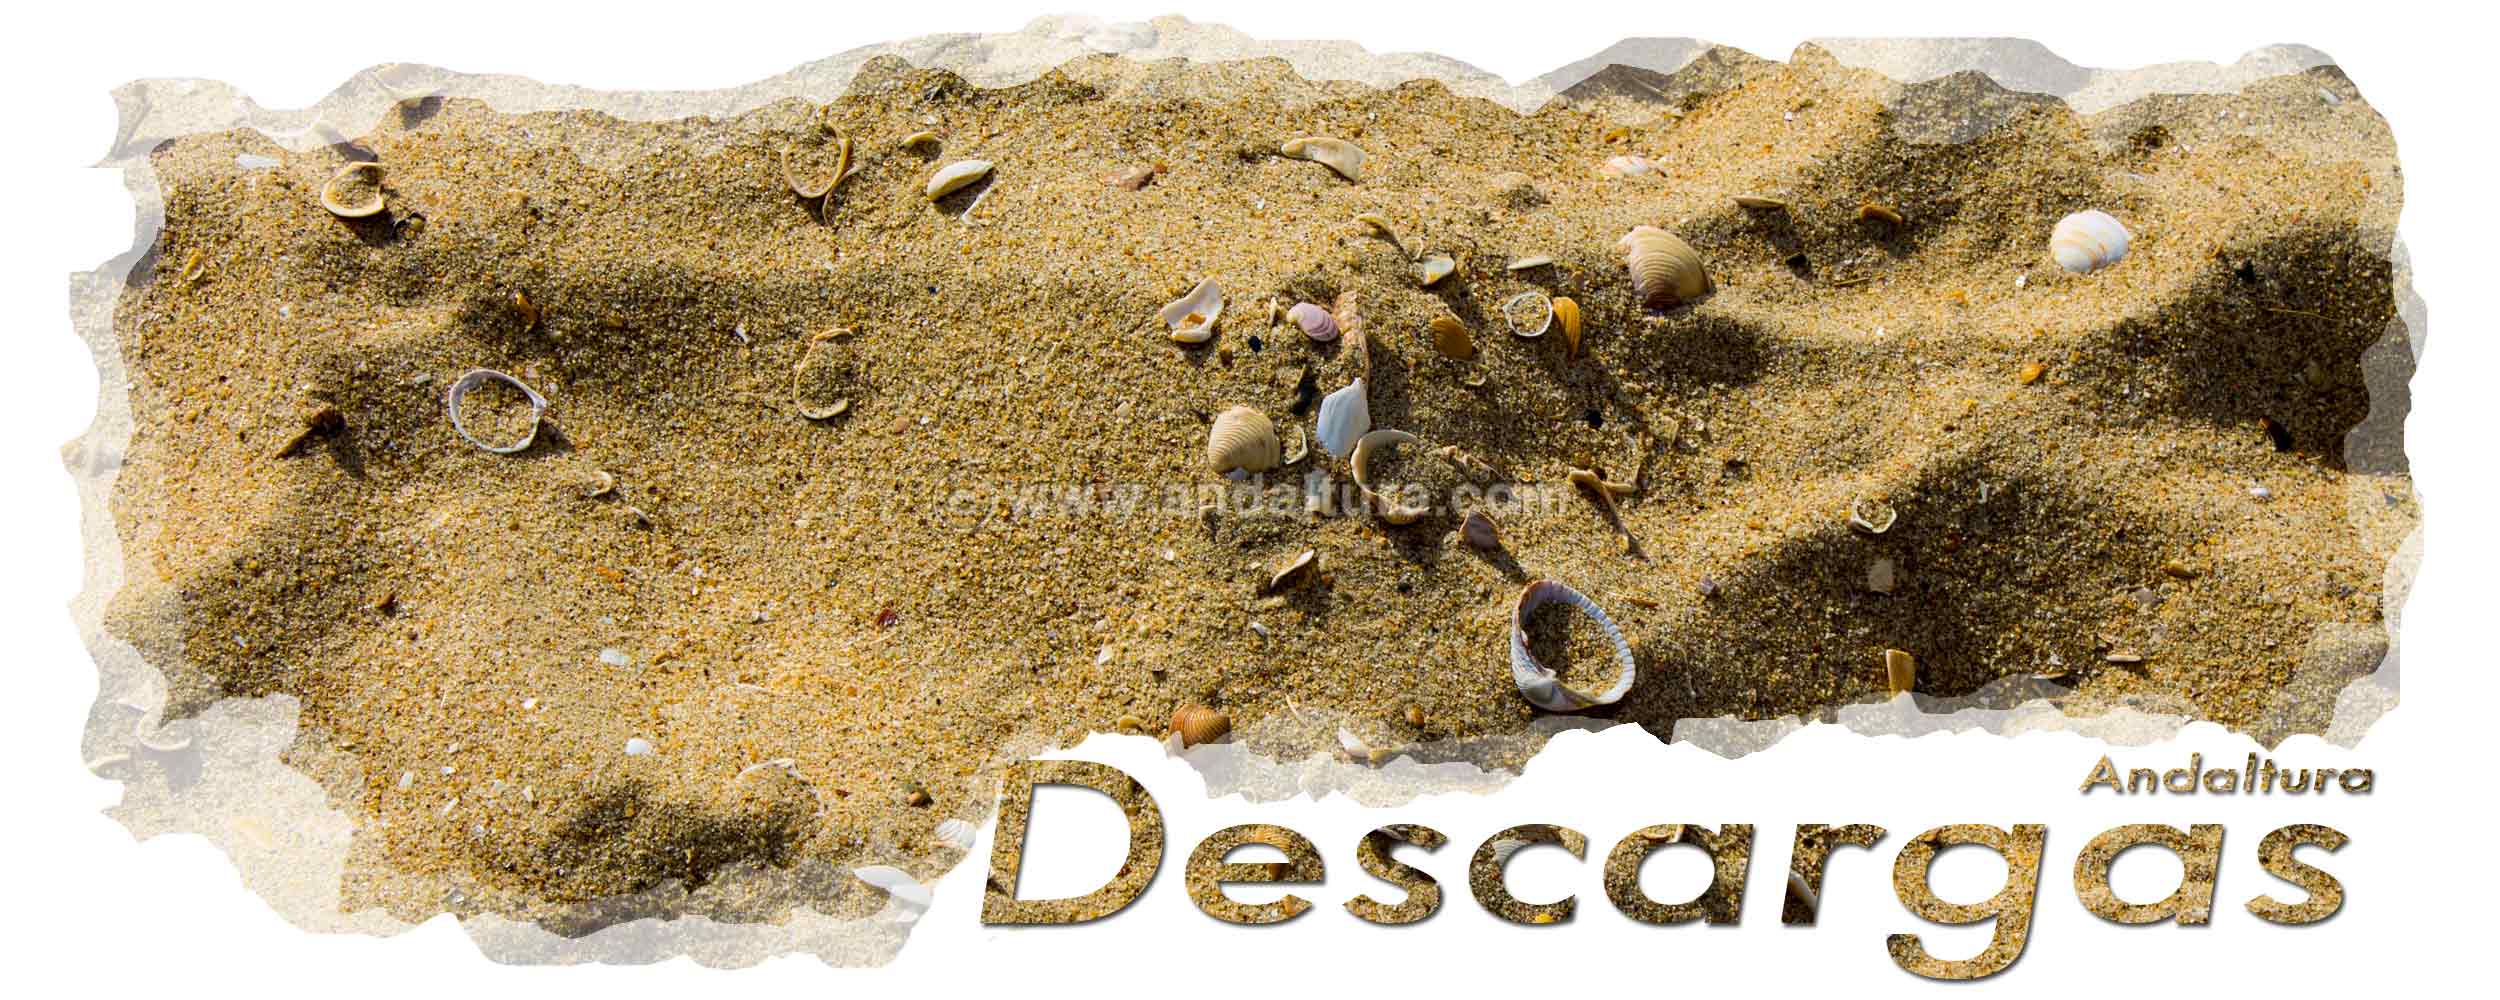 Conchas y arena de Marismas -Cabecera de la zona de descargas de archivos gratis de Andaltura